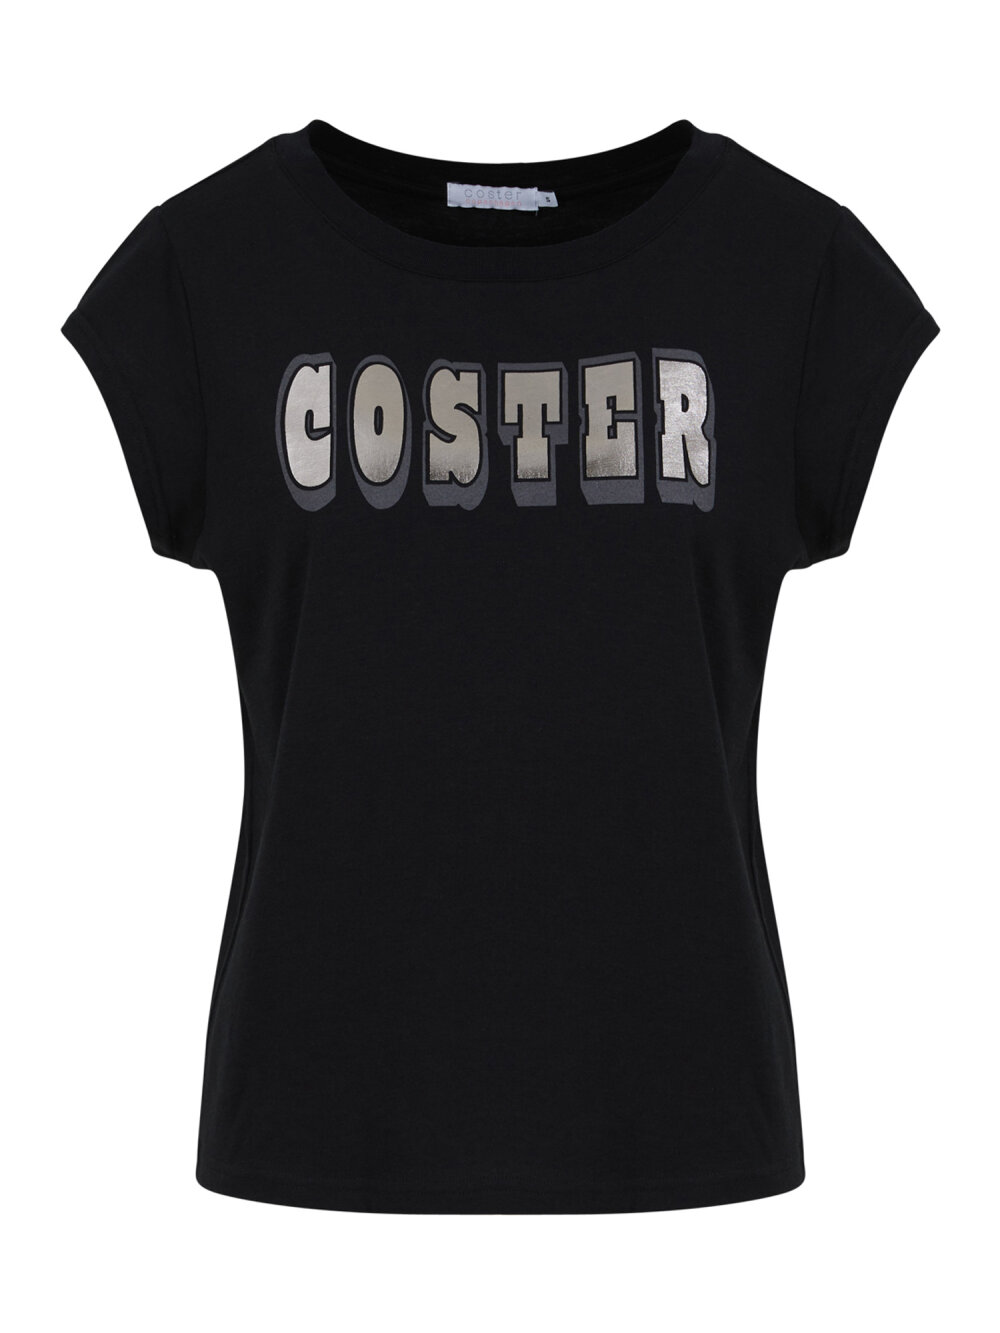 Coster Copenhagen - Coster sport tee - Cap sleeve